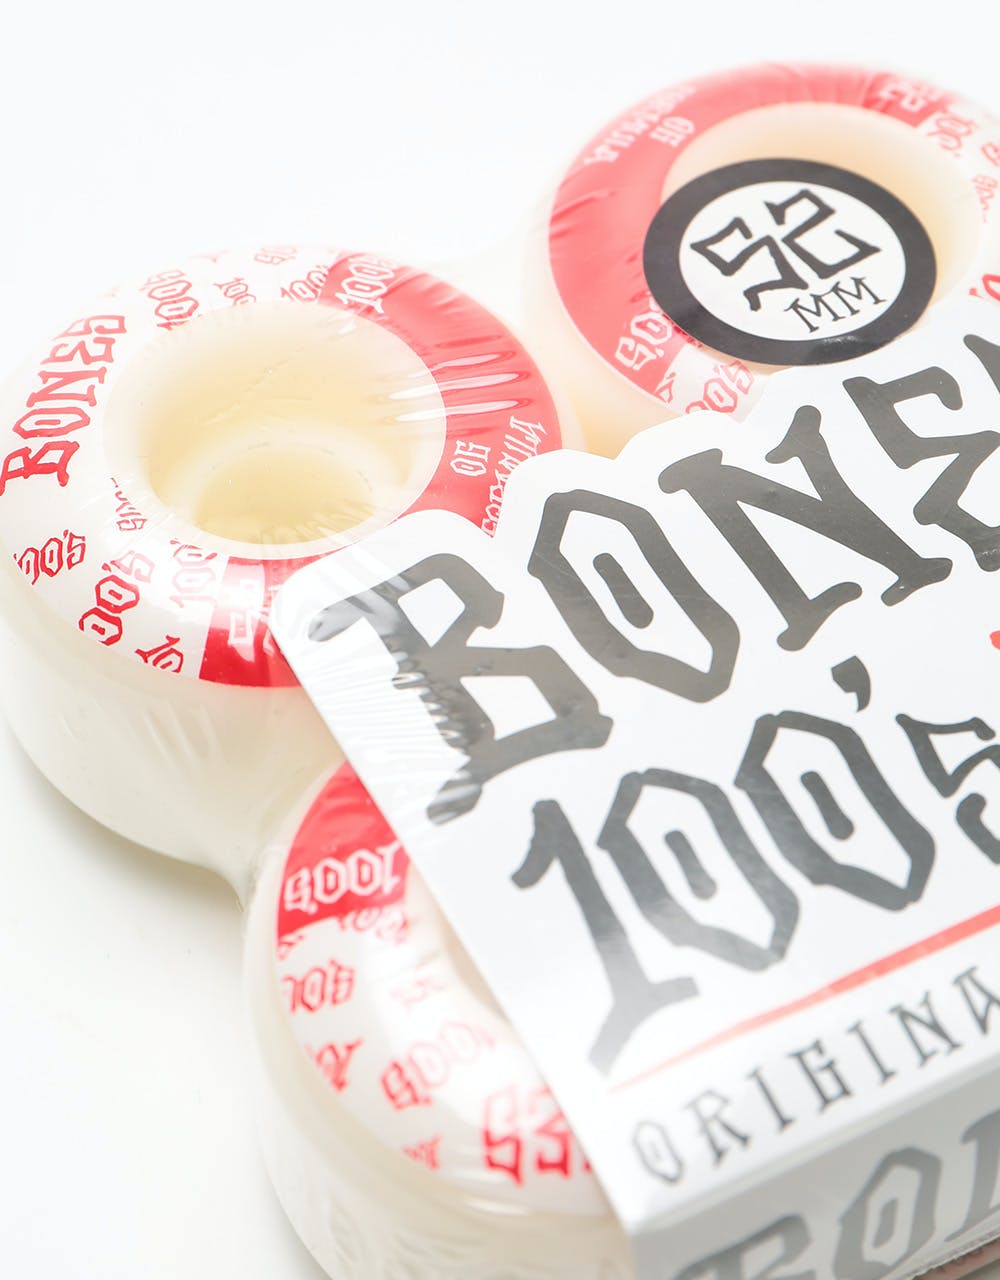 Bones OG 100s #13 V4 Skateboard Wheel - 52mm